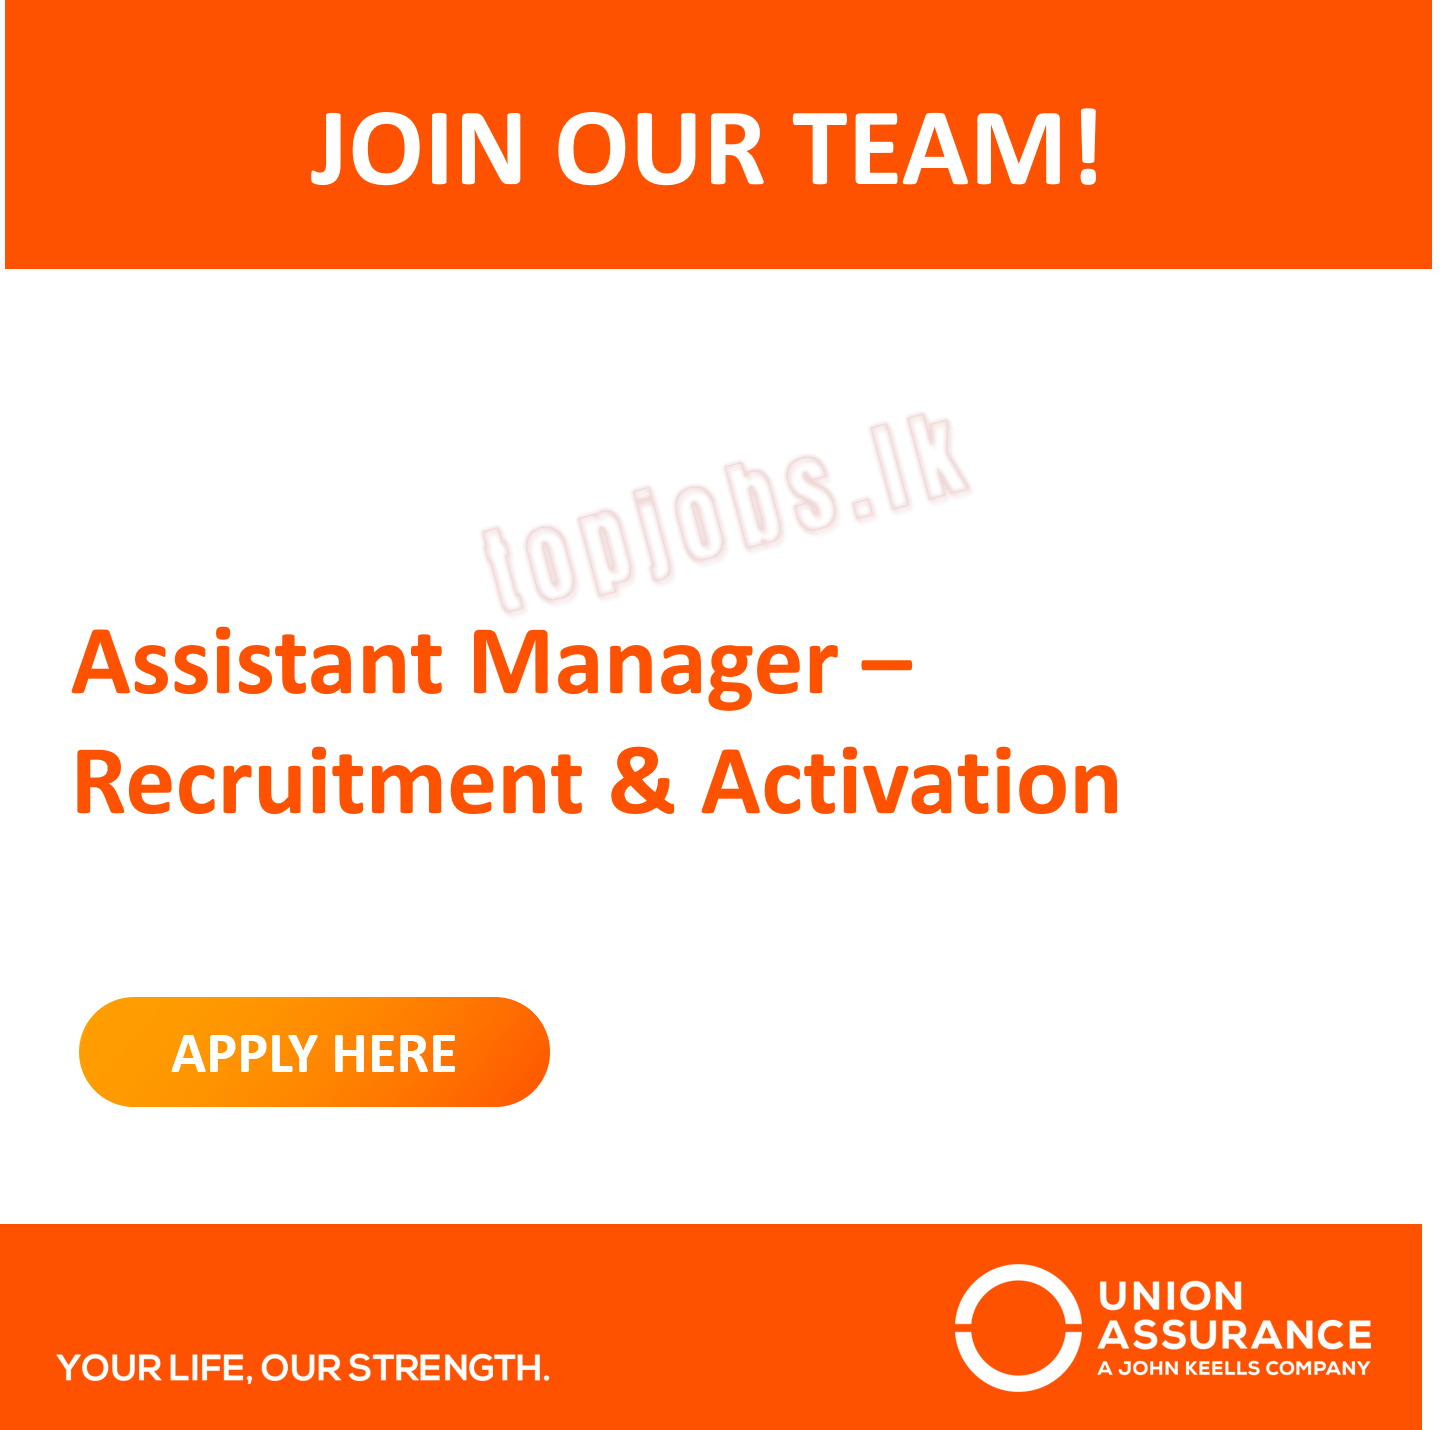 Assistant Manager - Recruitment & Activation Union Assurance Details